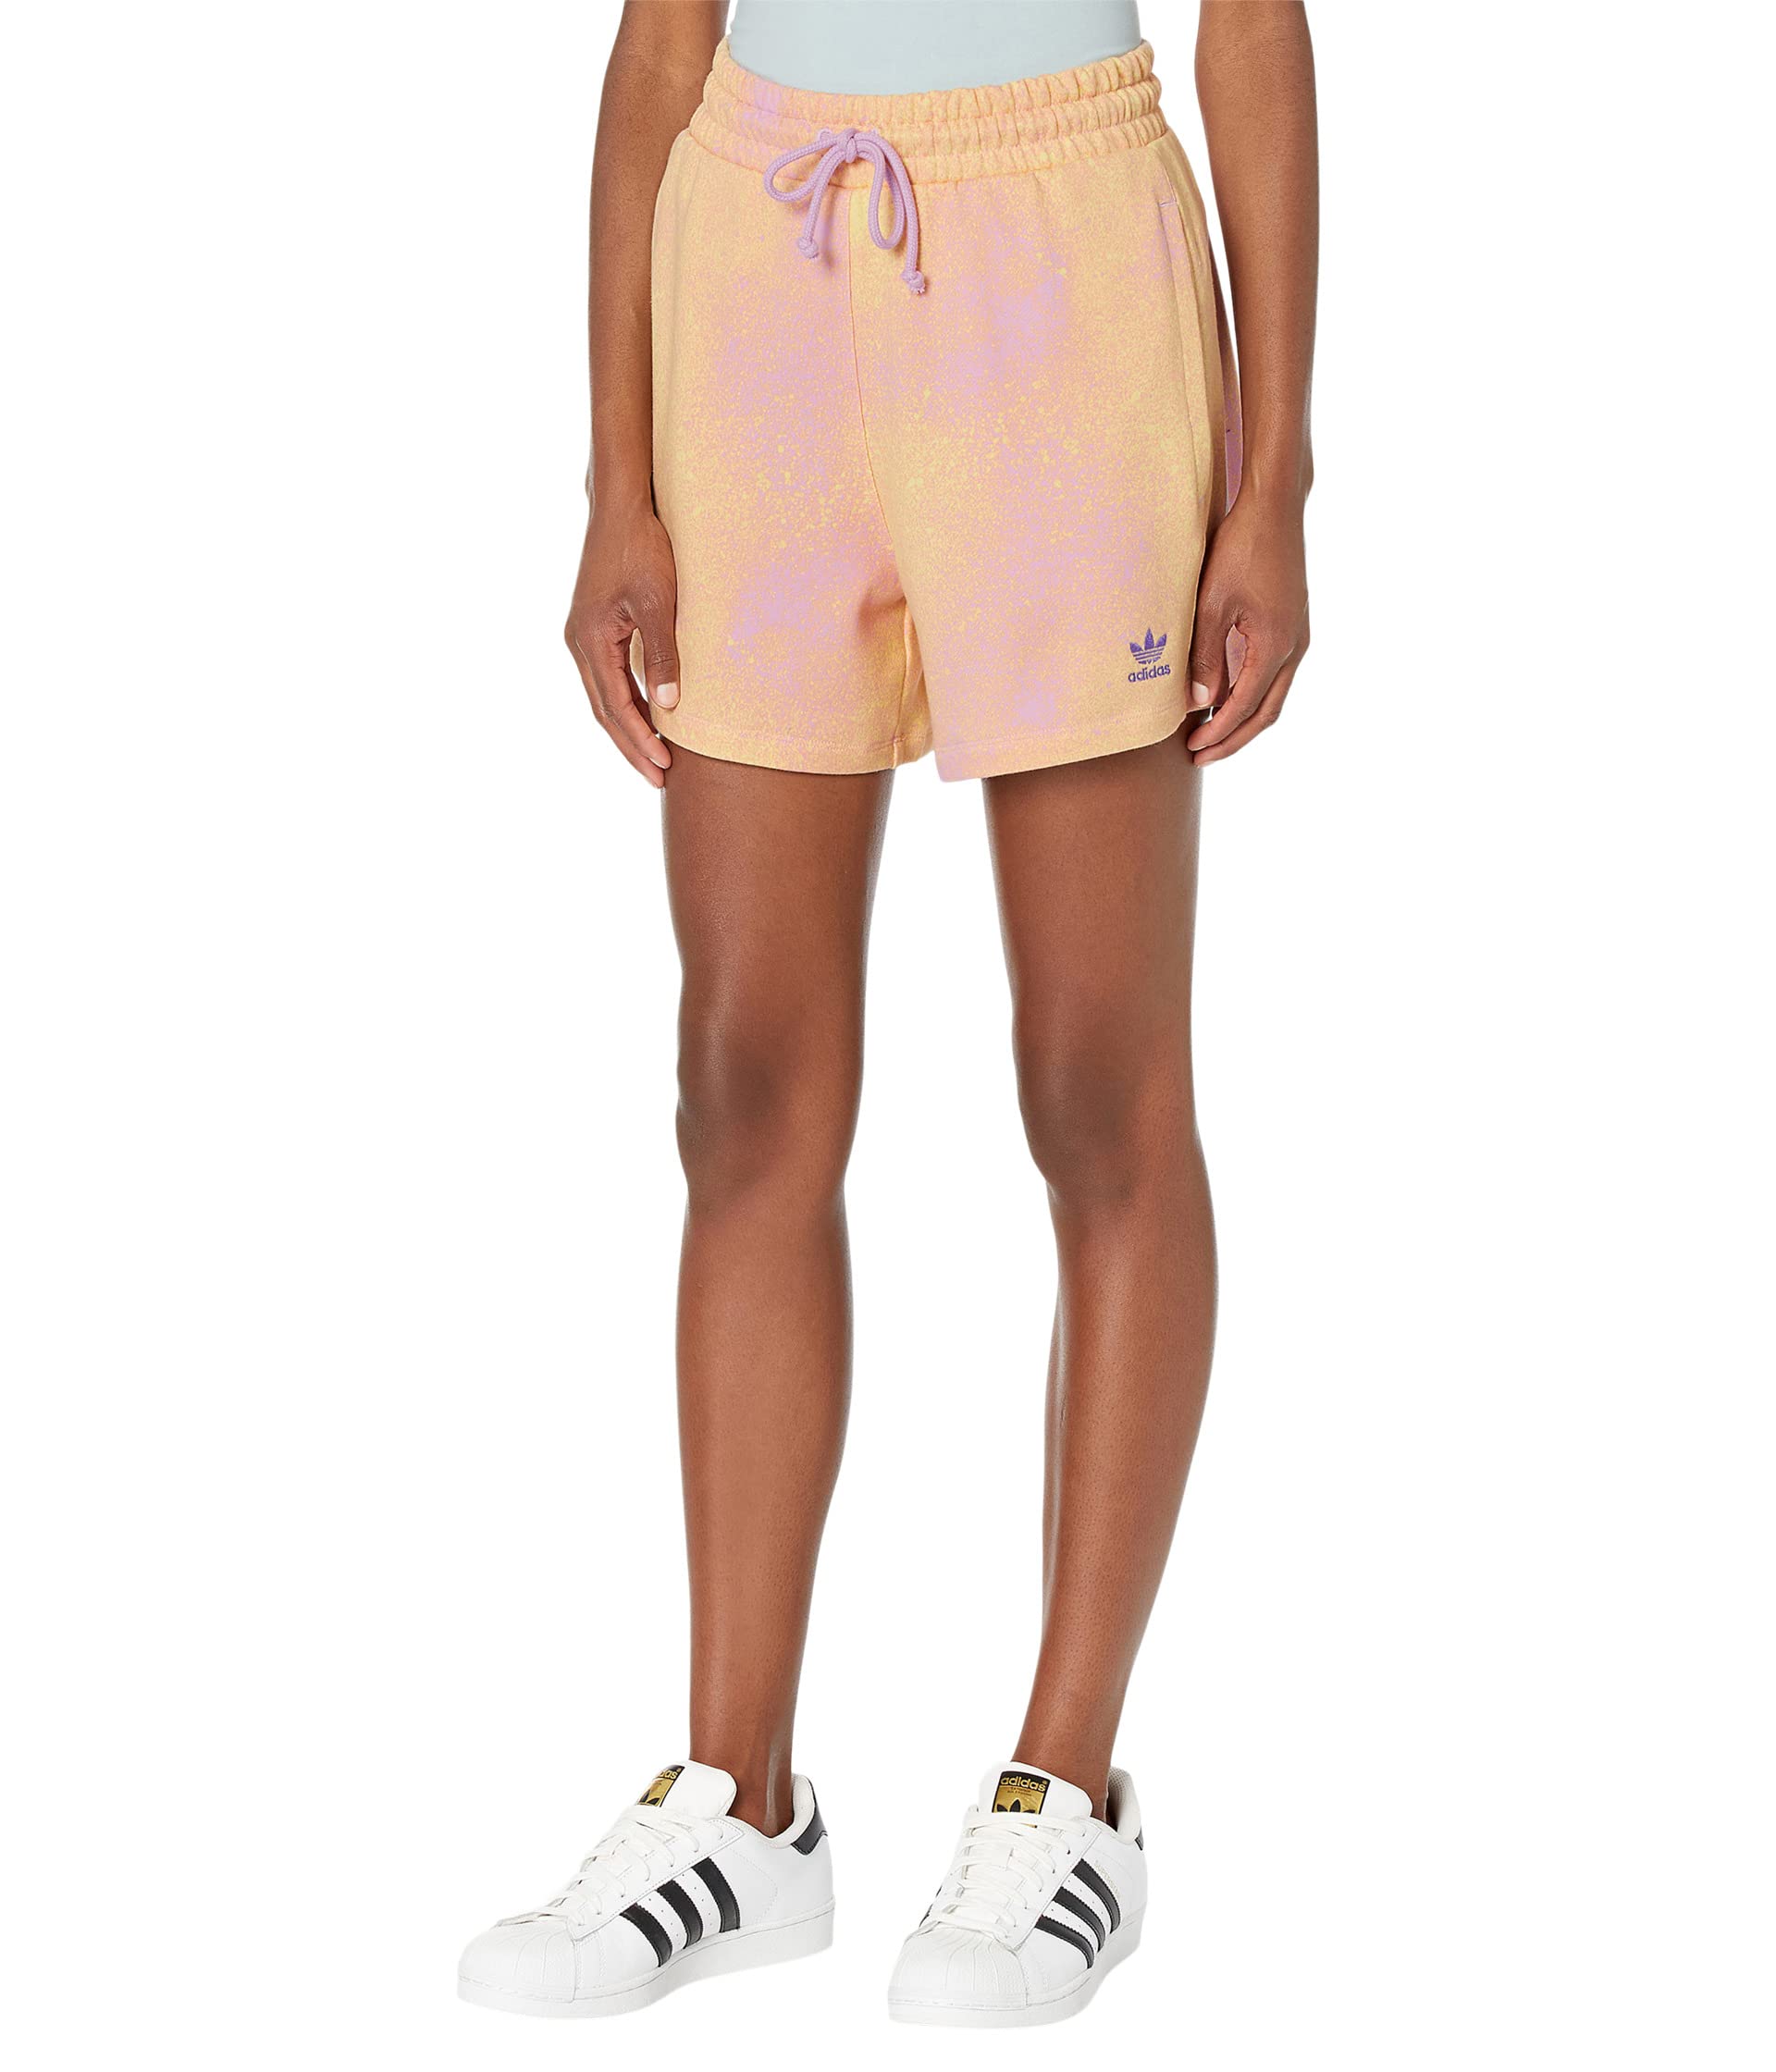 Шорты Adidas Originals AdiColor Beach Vibes AOP Boyfriend, оранжевый/лиловый кроссовки adidas originals superstar her vegan footwear white bliss lilac almost pink